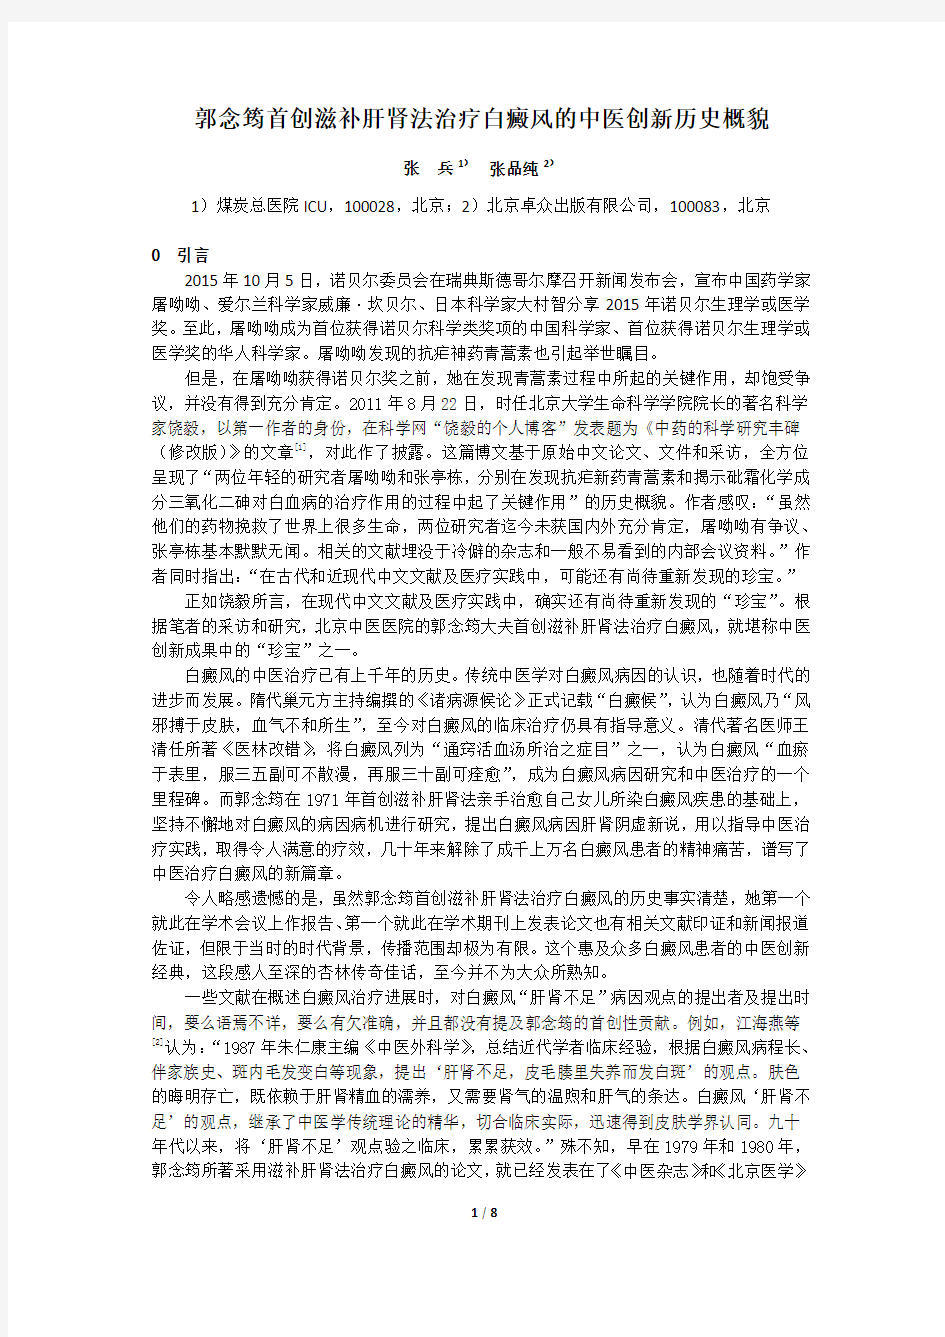 郭念筠首创滋补肝肾法治疗白癜风的中医创新历史概貌(再修改稿)20151229.